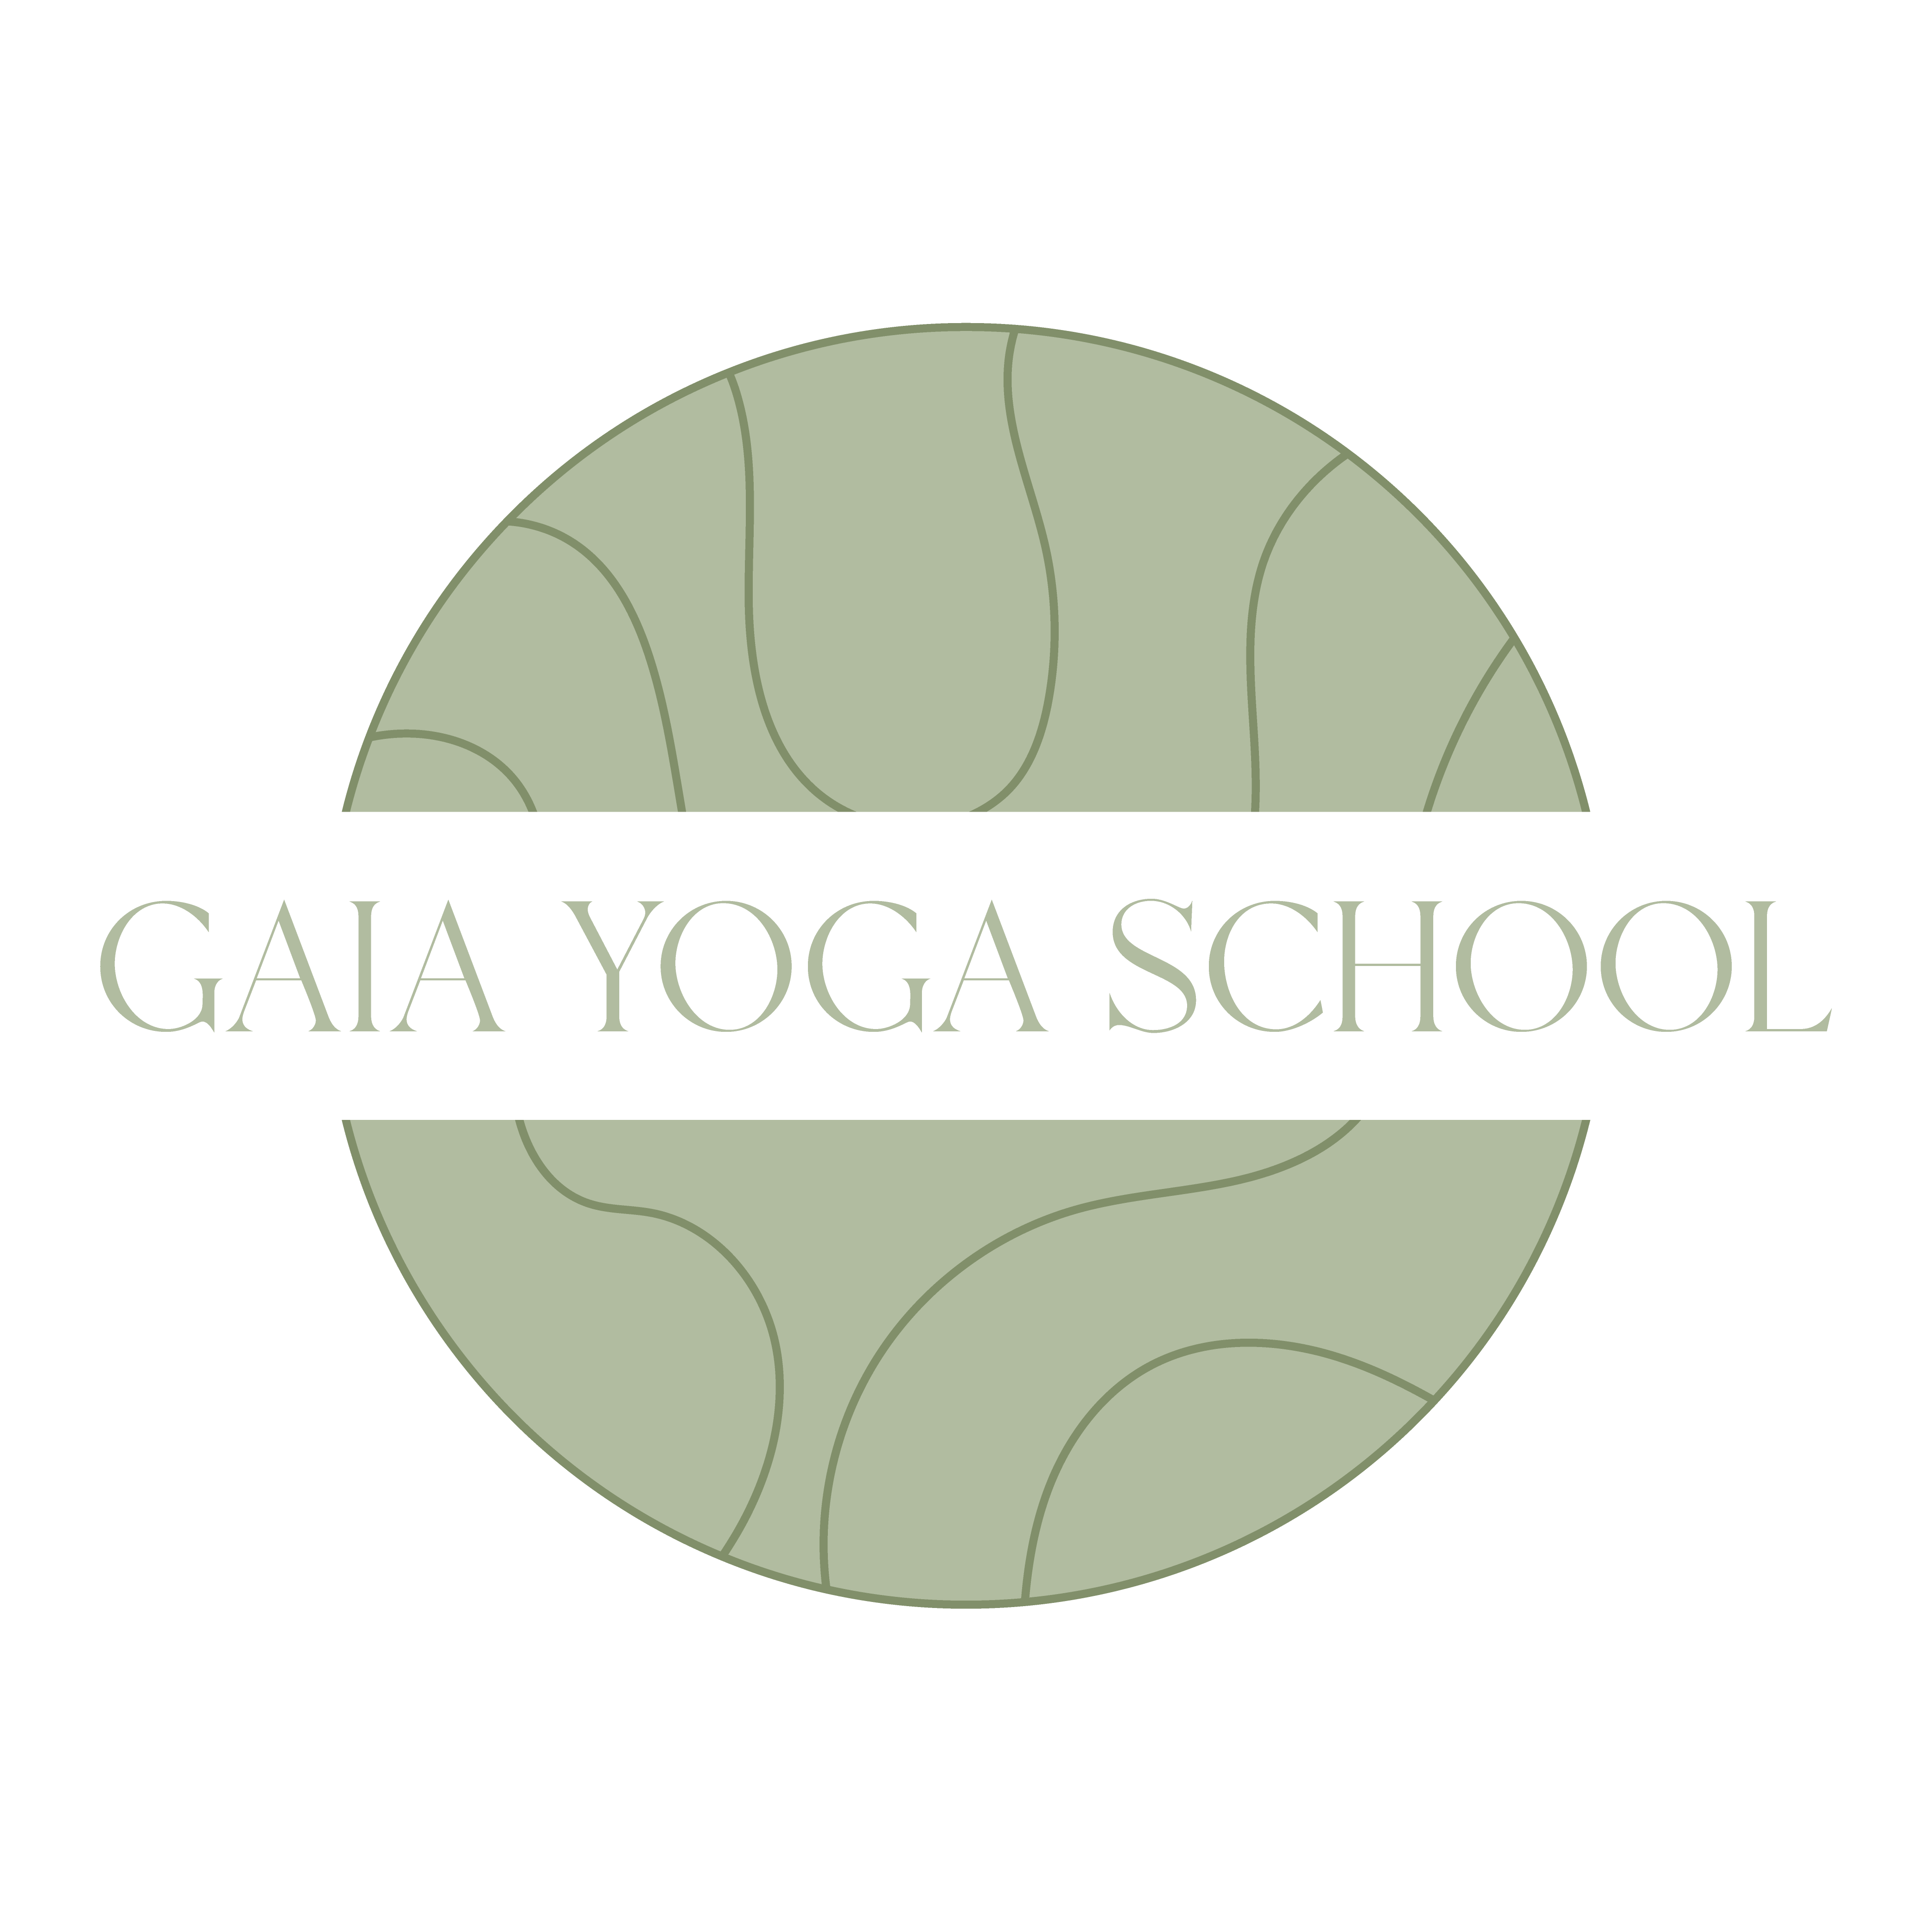 Gaia Yoga School